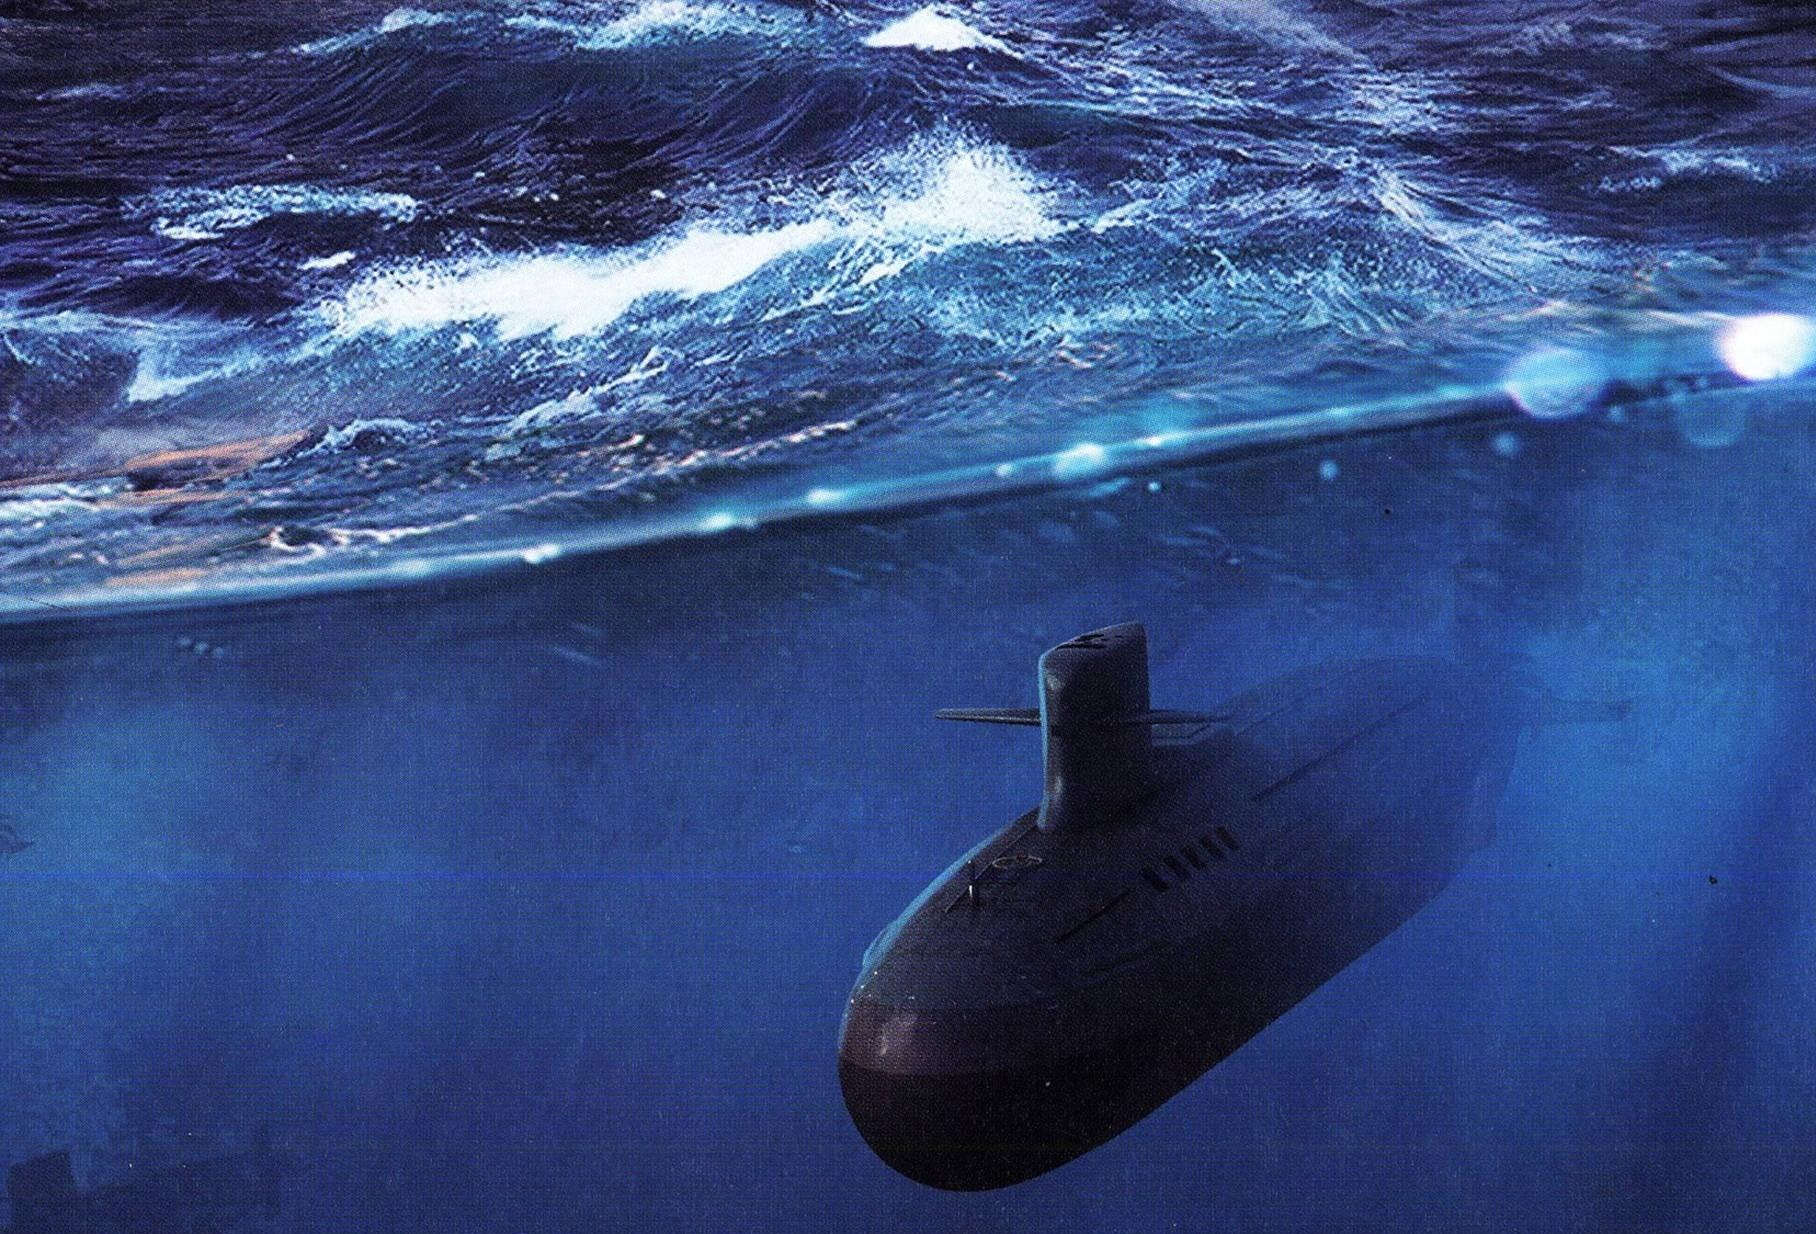 403号核潜艇对峙事件图片